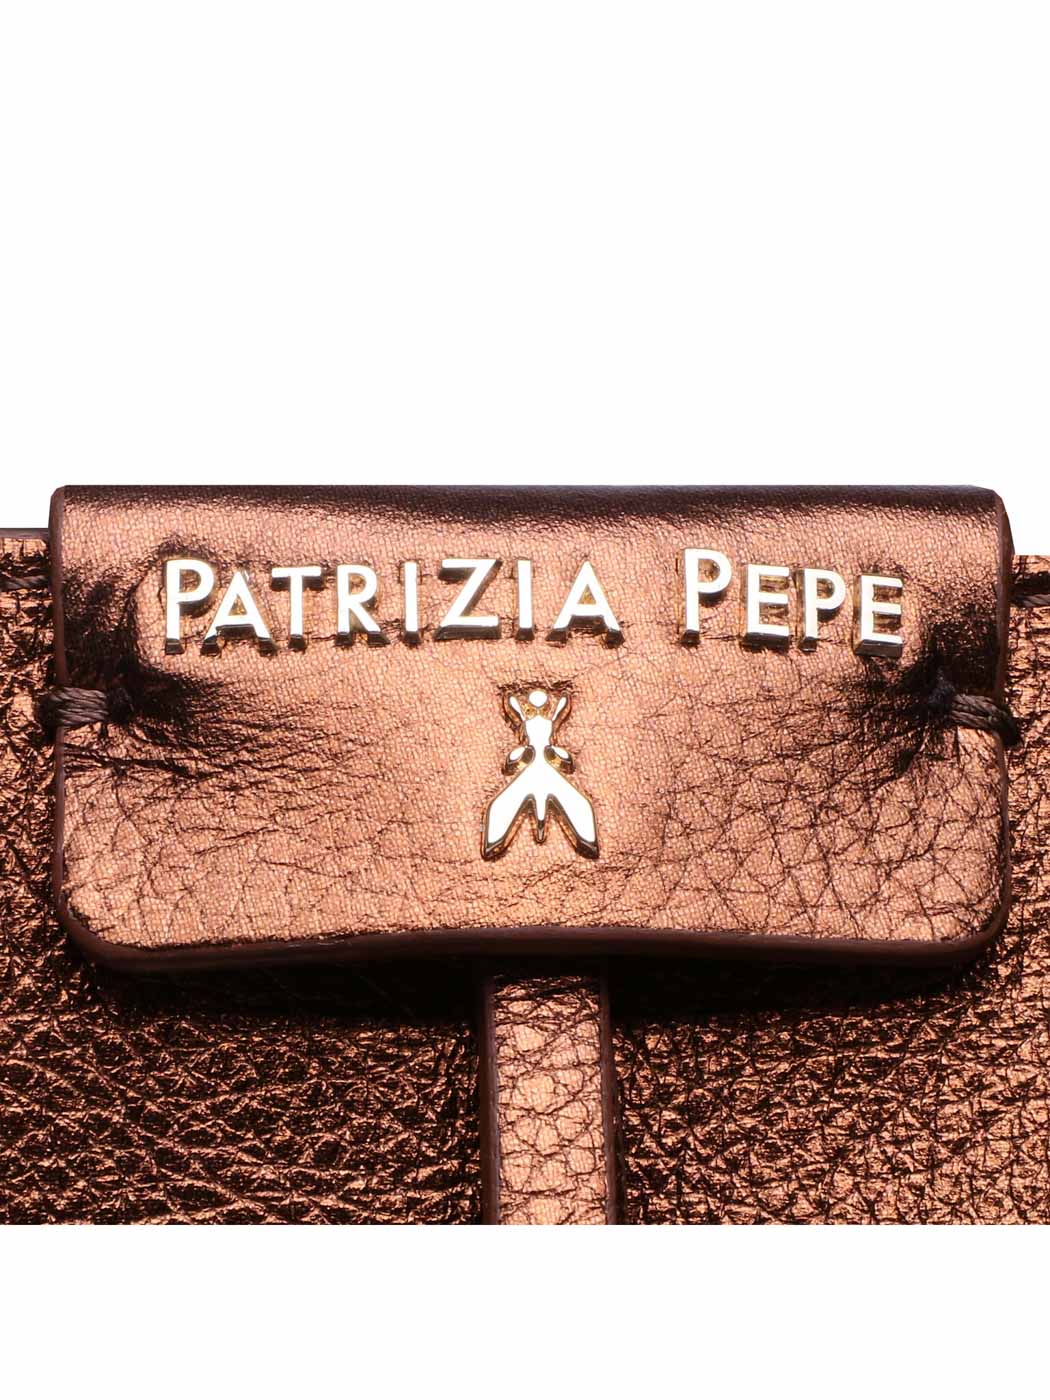 Patrizia Pepe City Tote - Bronze